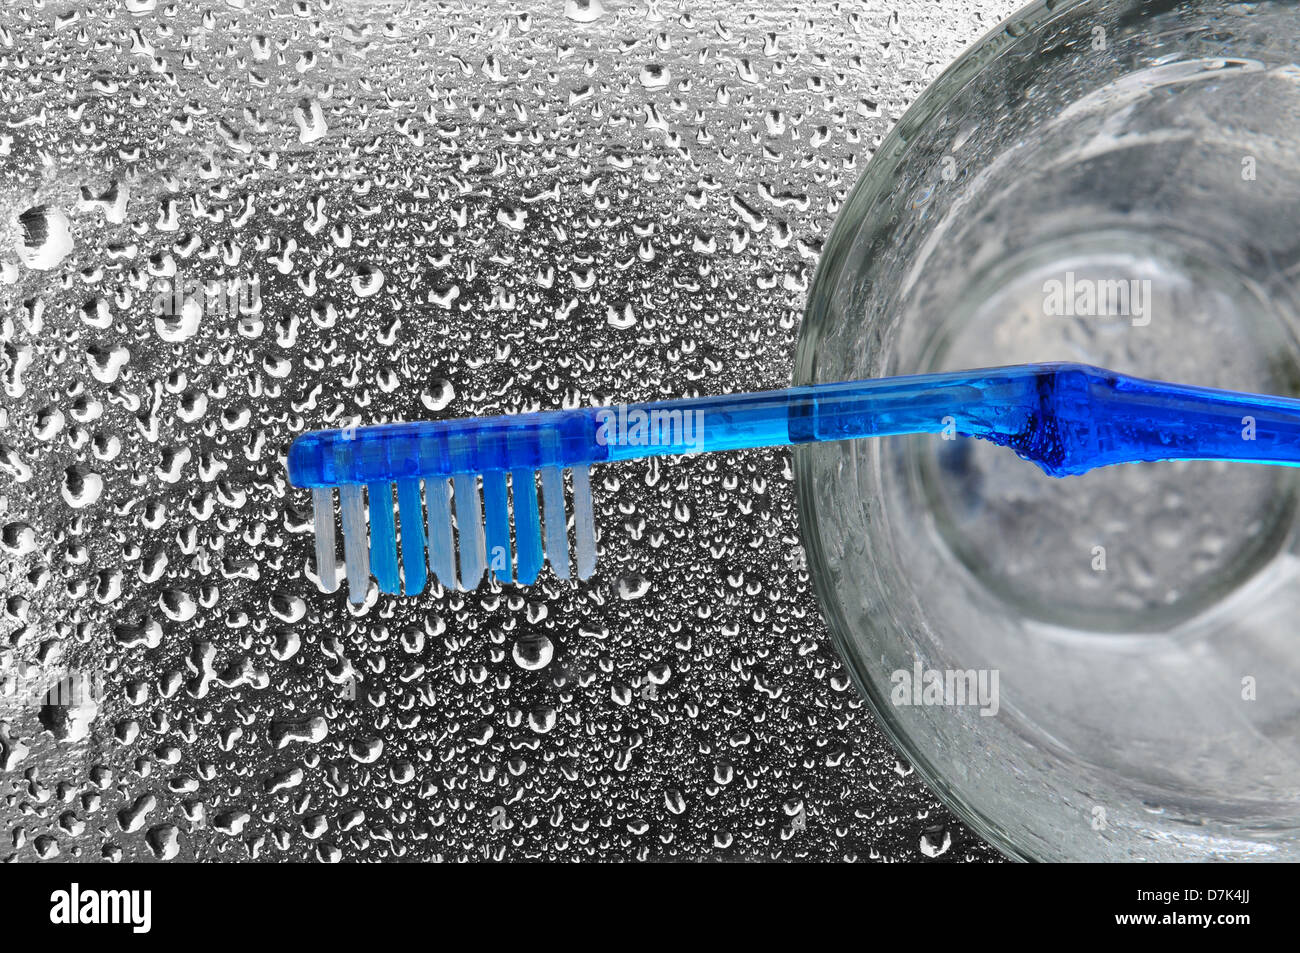 Un cepillo de dientes de color azul en la parte superior de un vaso sobre una encimera de baño mojado. Foto de stock